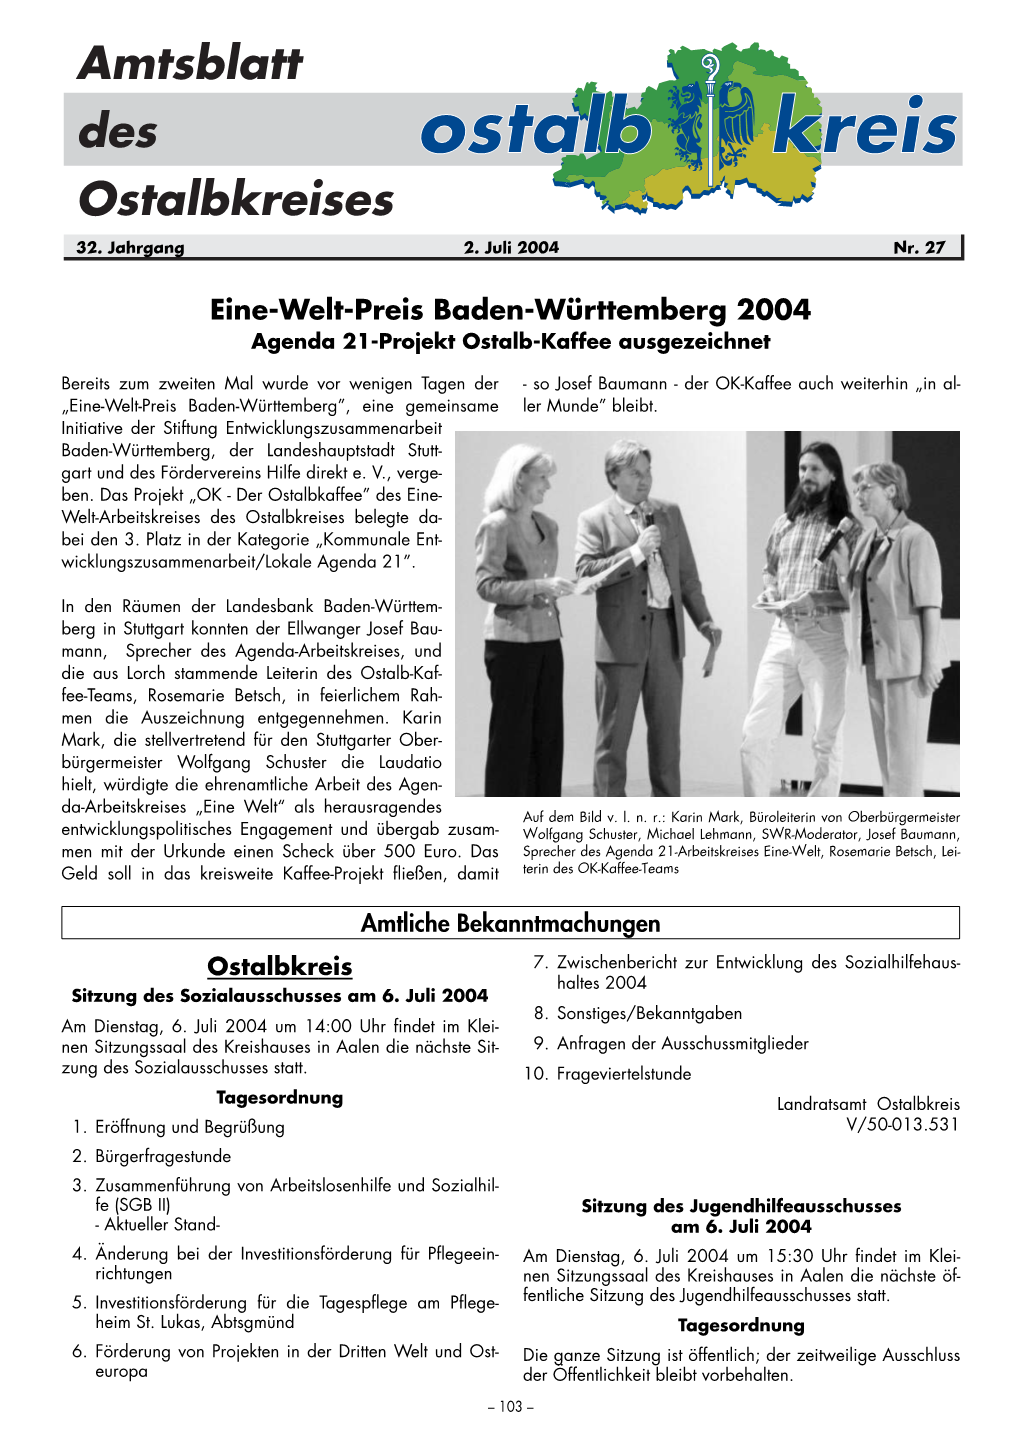 Eine-Welt-Preis Baden-Württemberg 2004 Agenda 21-Projekt Ostalb-Kaffee Ausgezeichnet